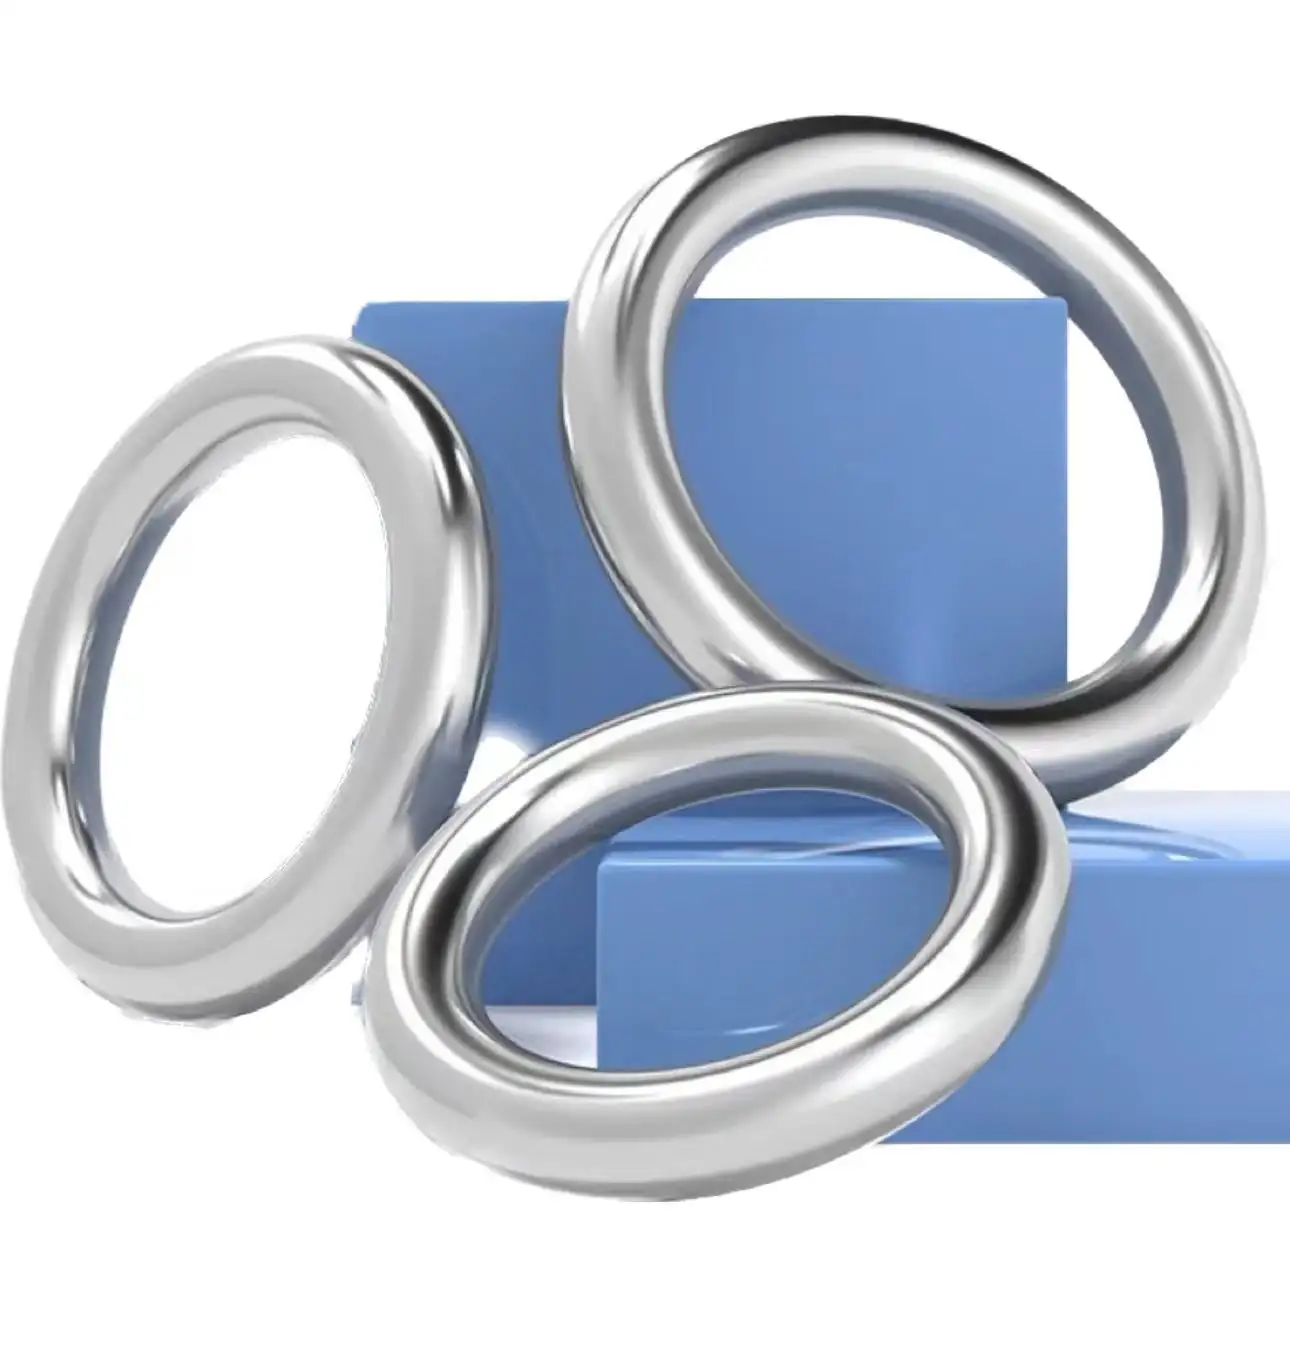 Produk pasokan pabrik kualitas tinggi ketebalan berbeda dan ukuran 304/316 cincin Metal Baja tahan karat cincin bundar terlas